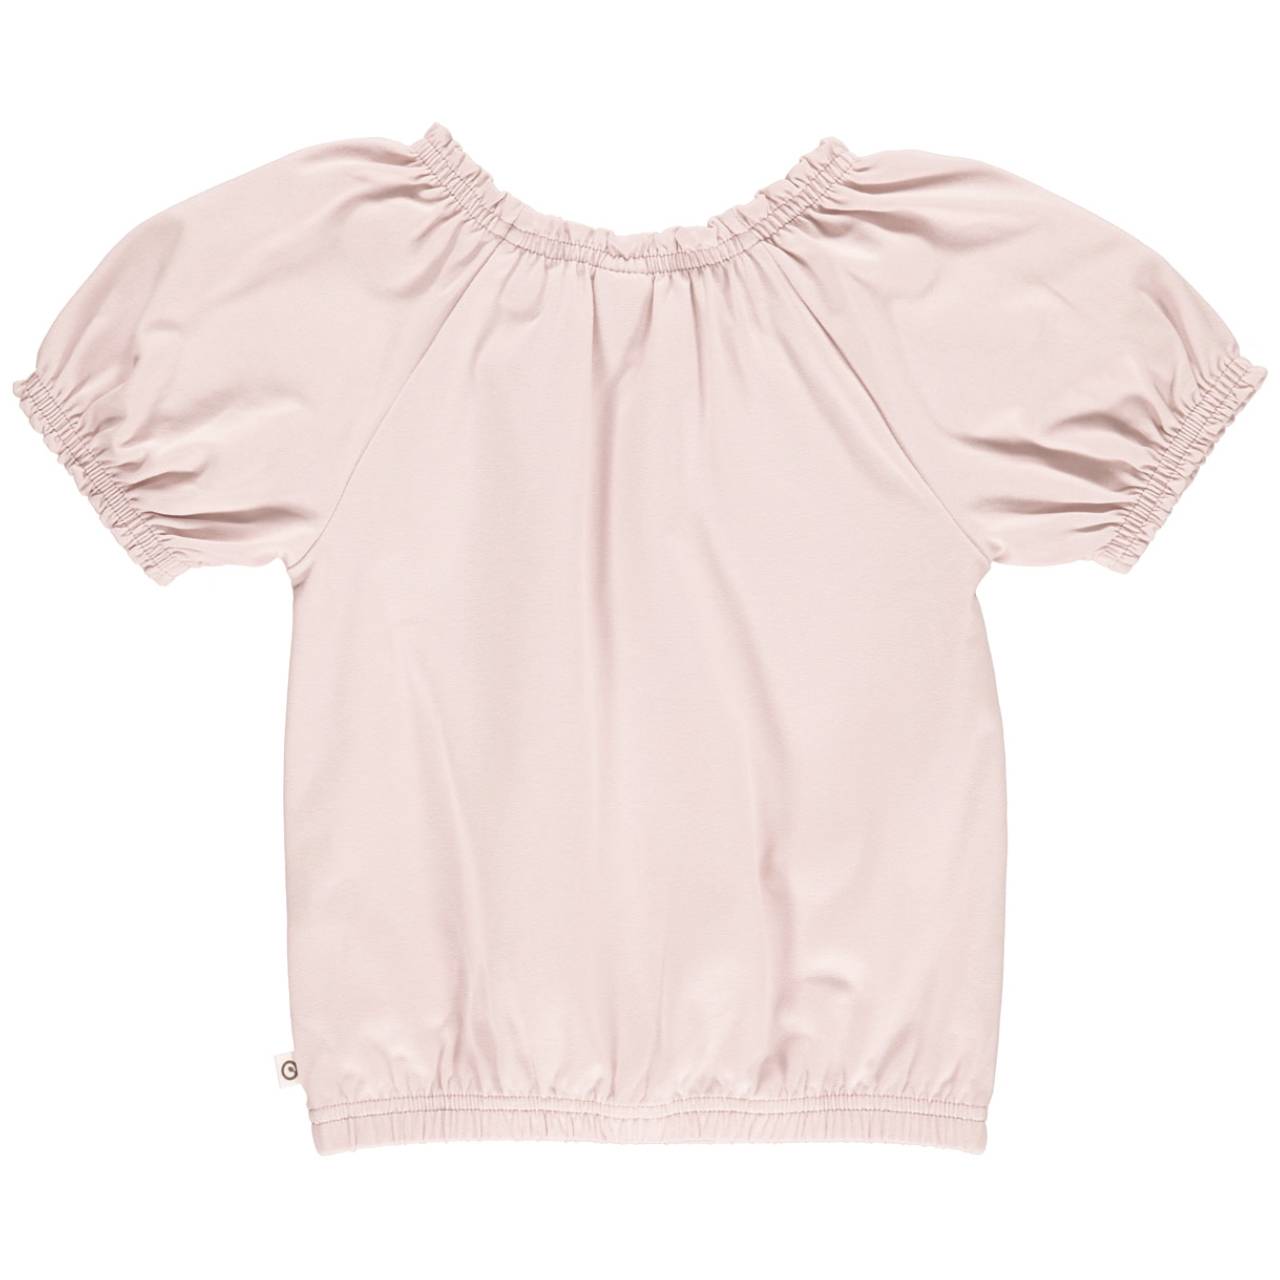 T-Shirt Puffärmelchen Kragenbereich komplett elastisch rose